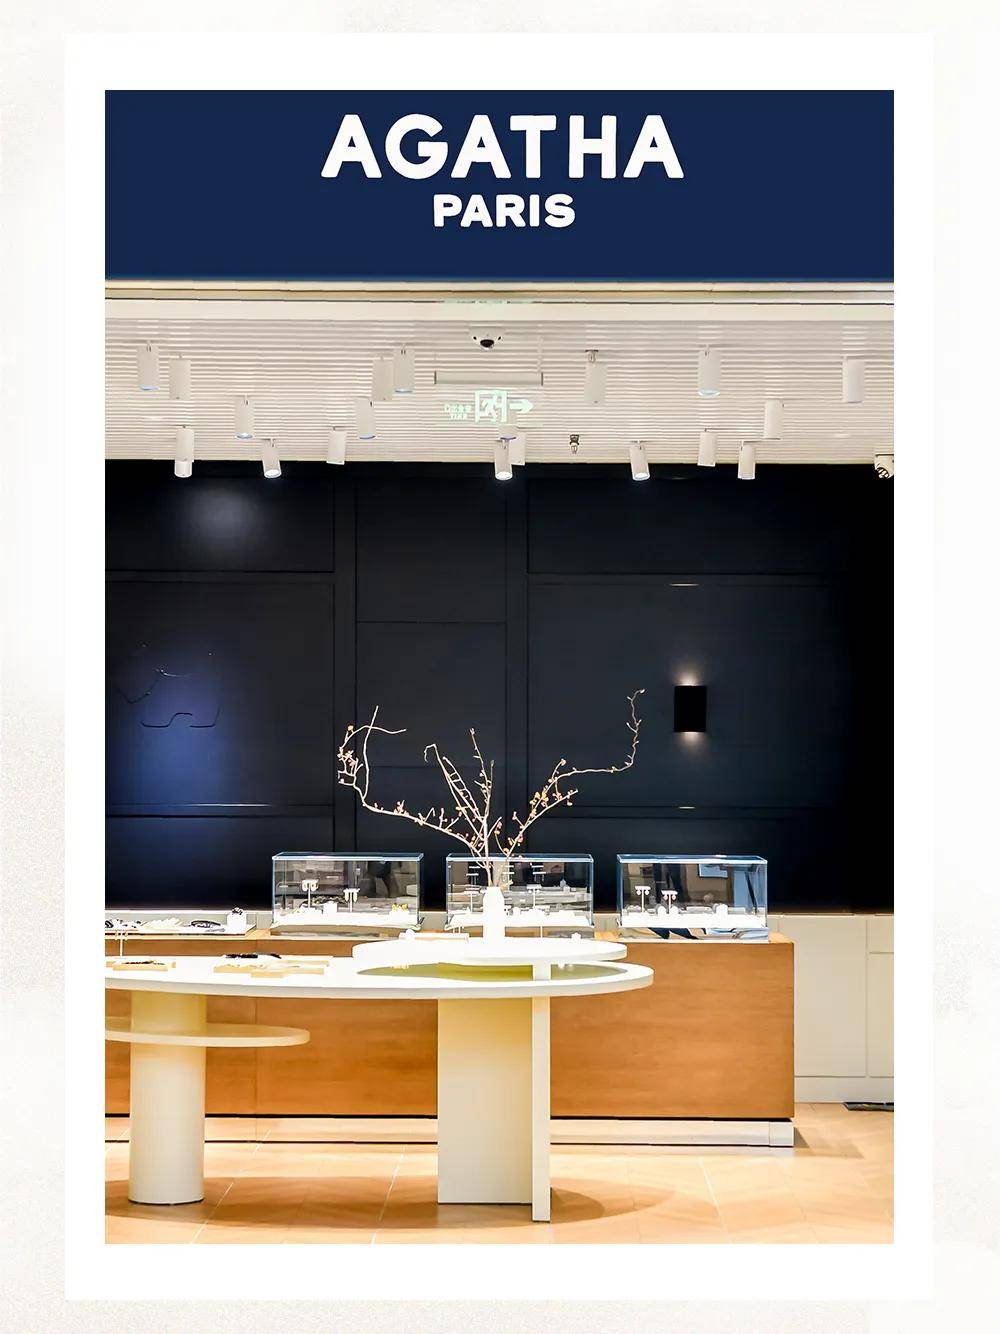 agatha全球机场新概念设计首店登陆,焕新演绎巴黎灵感